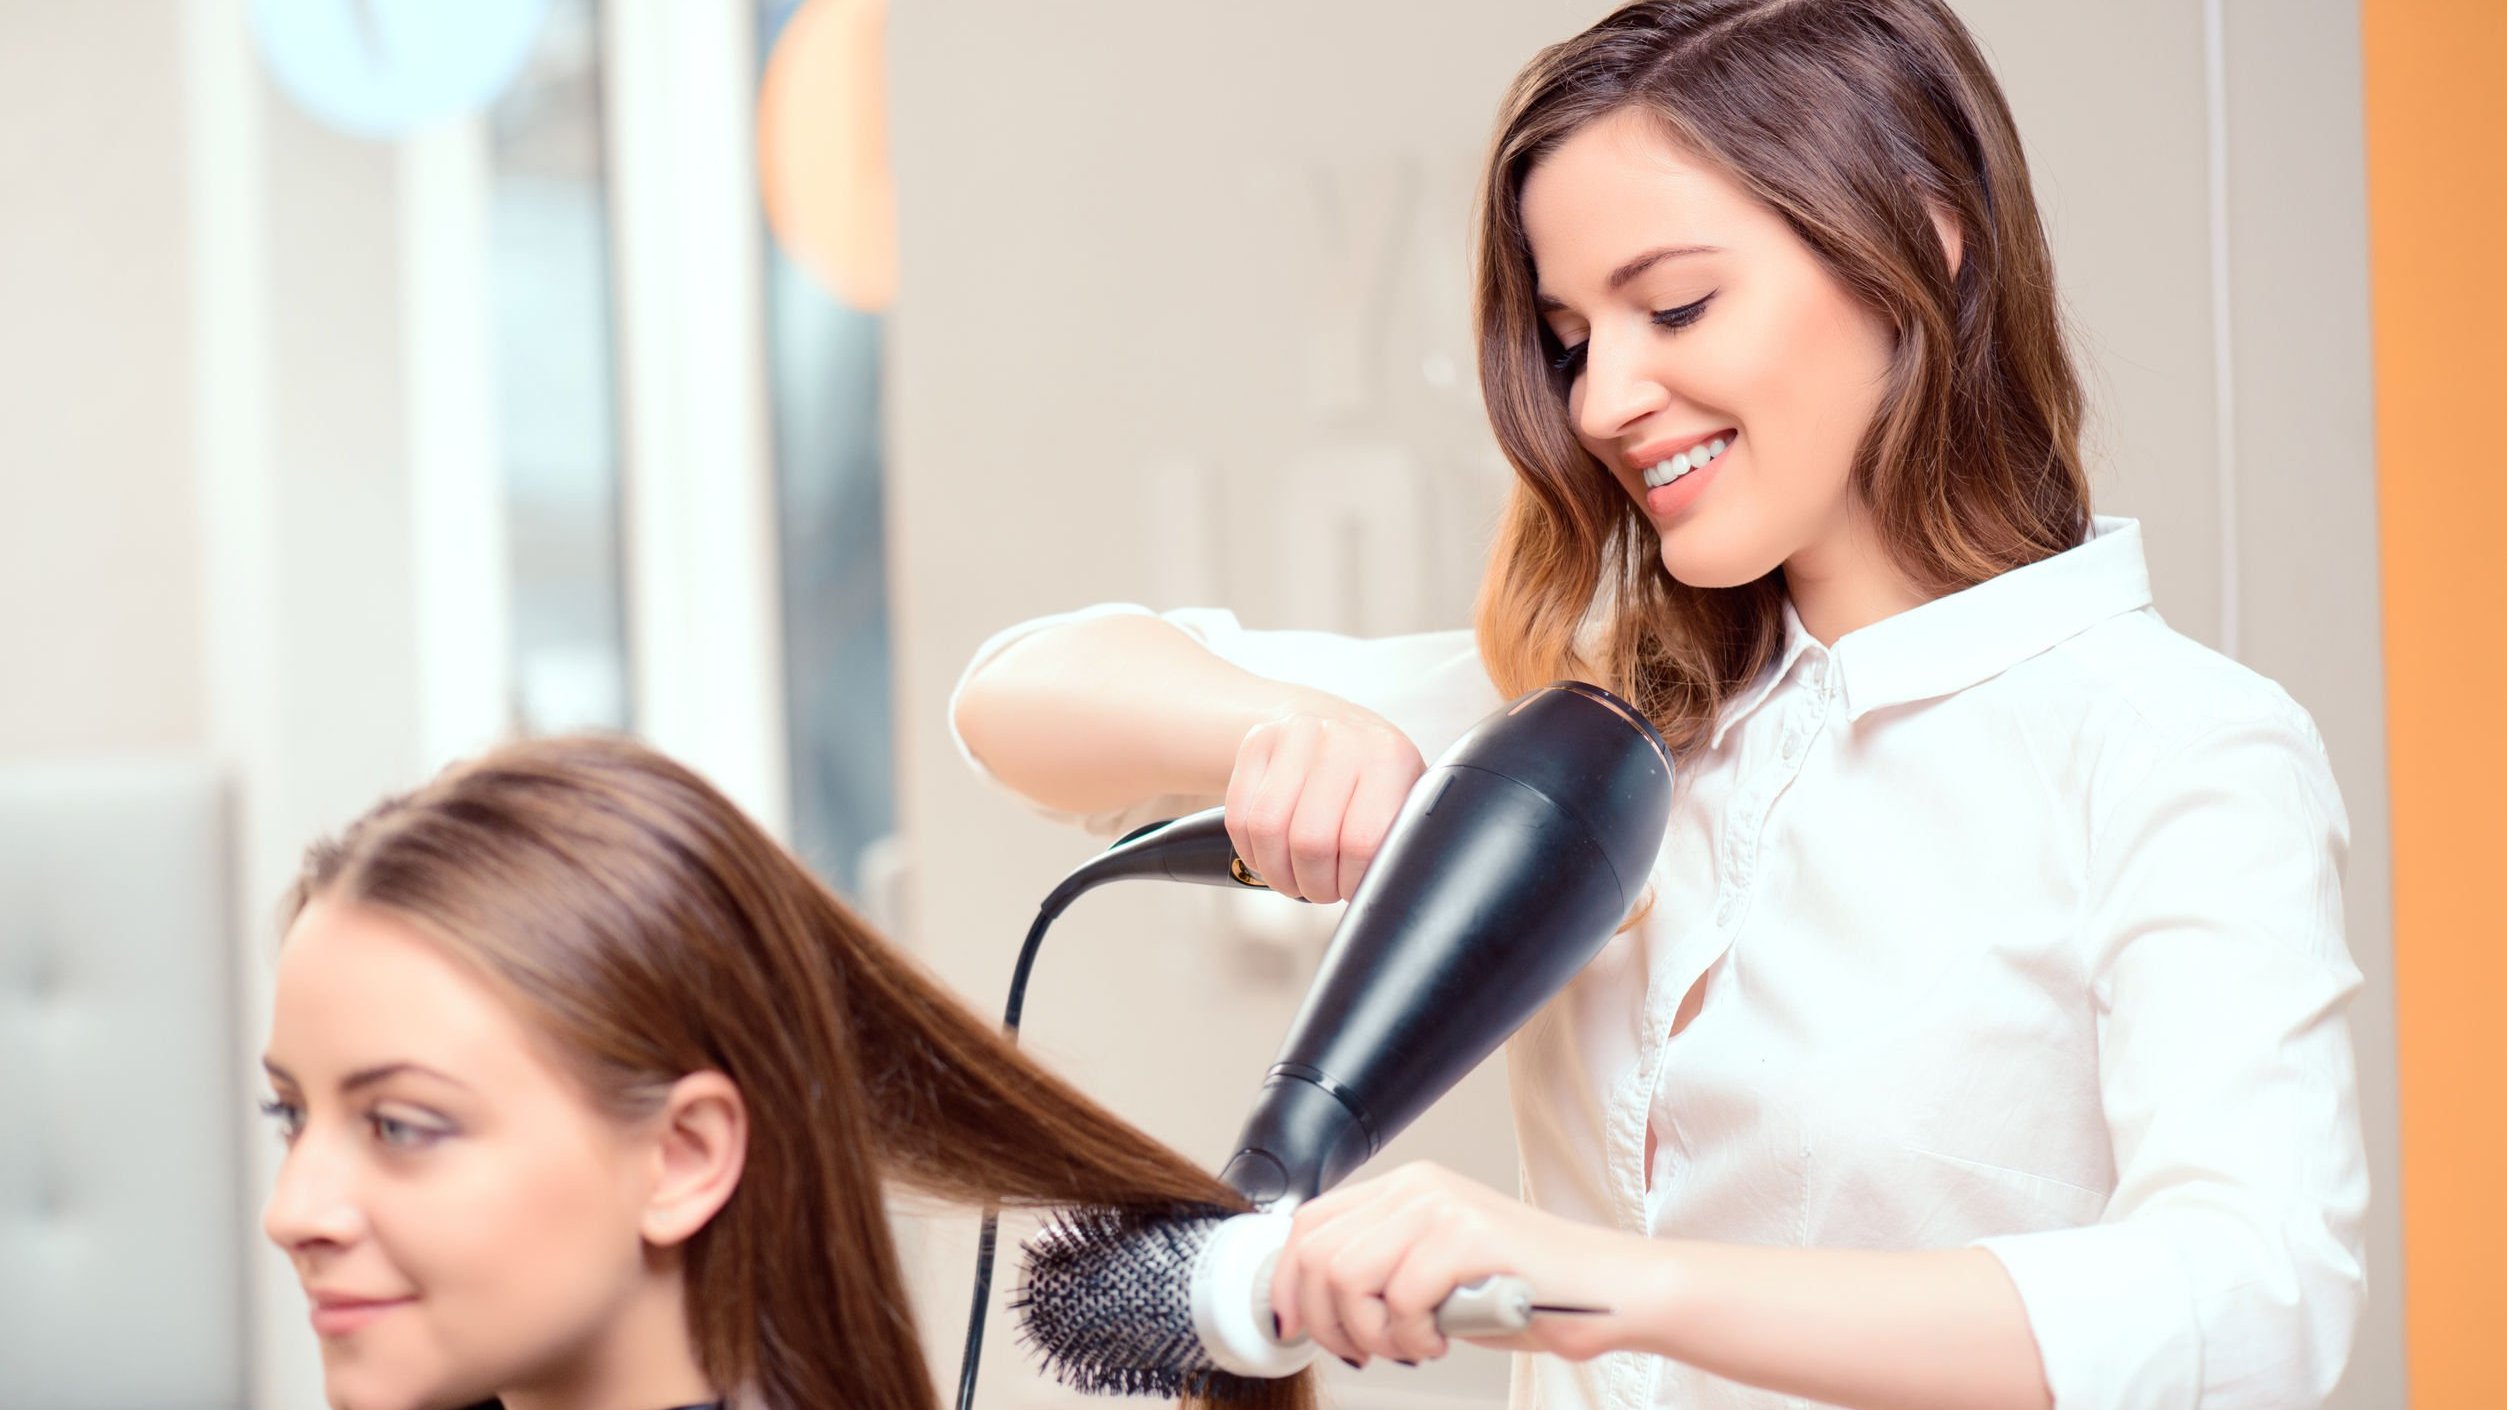 Cabeleireira fazendo escova no cabelo da cliente